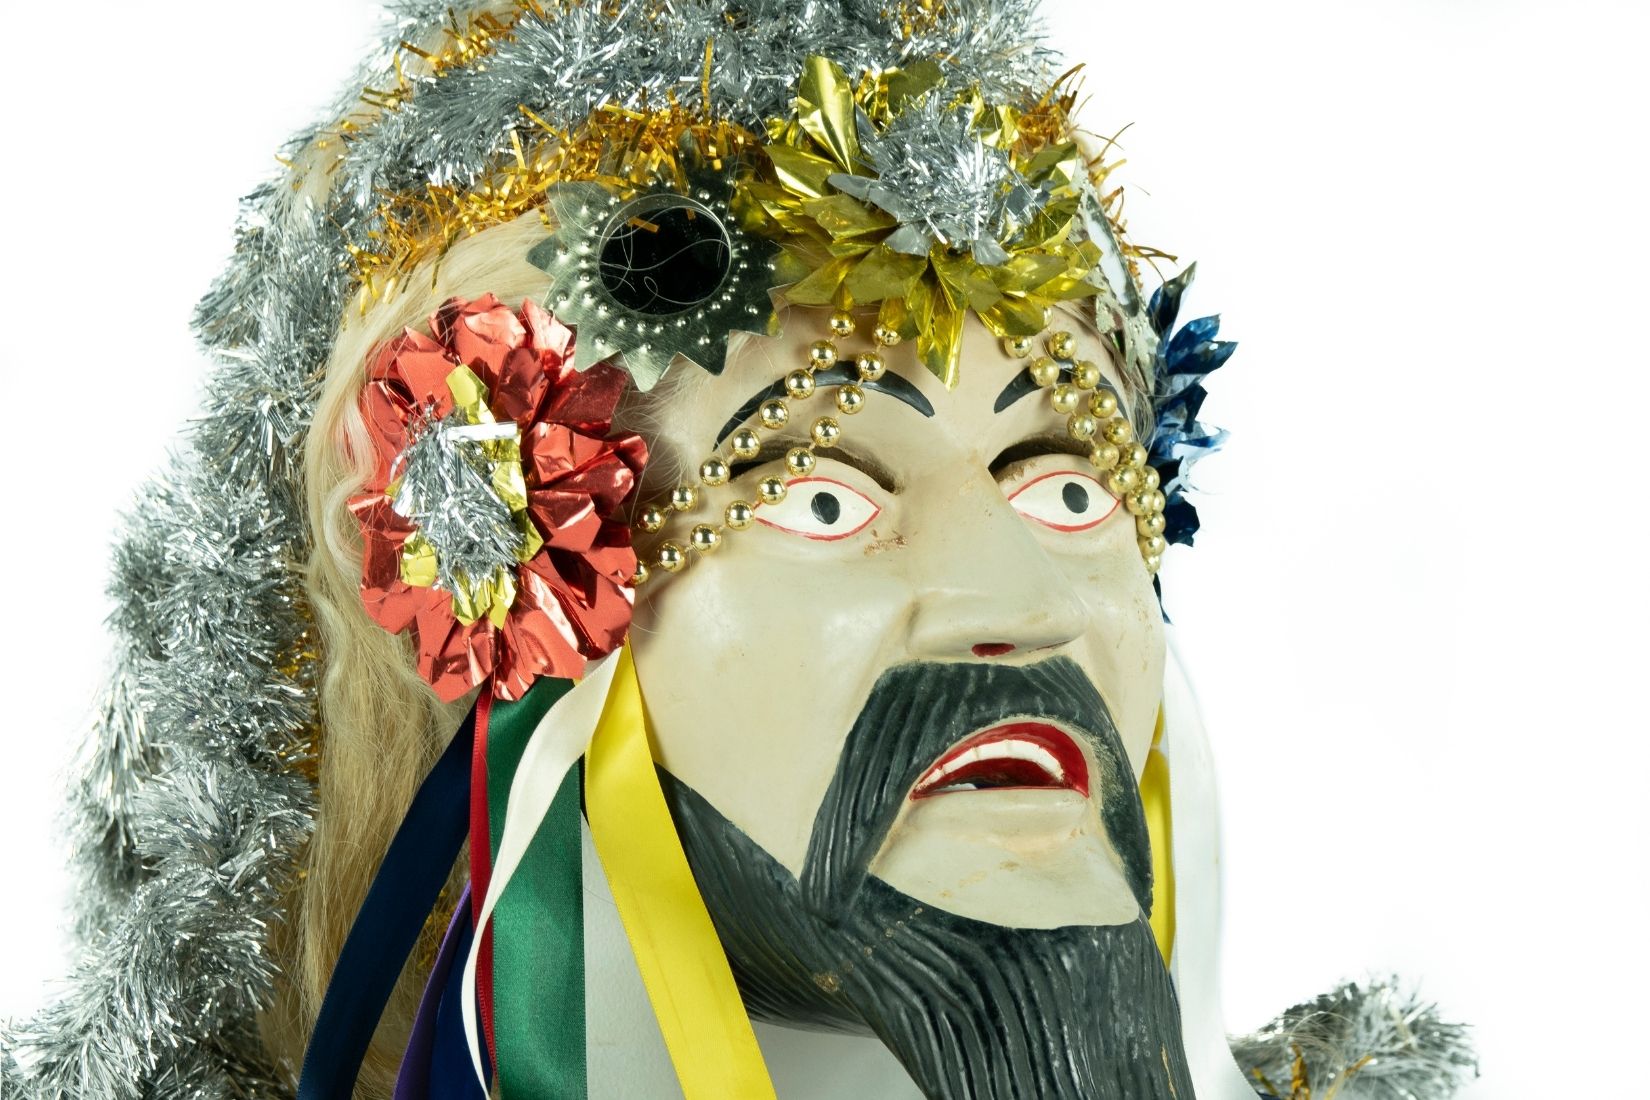 Máscara tallada en madera con ixtle, papel y listones. Artesano y procedencia desconocidos. Col. Populart. (Foto: EKV).